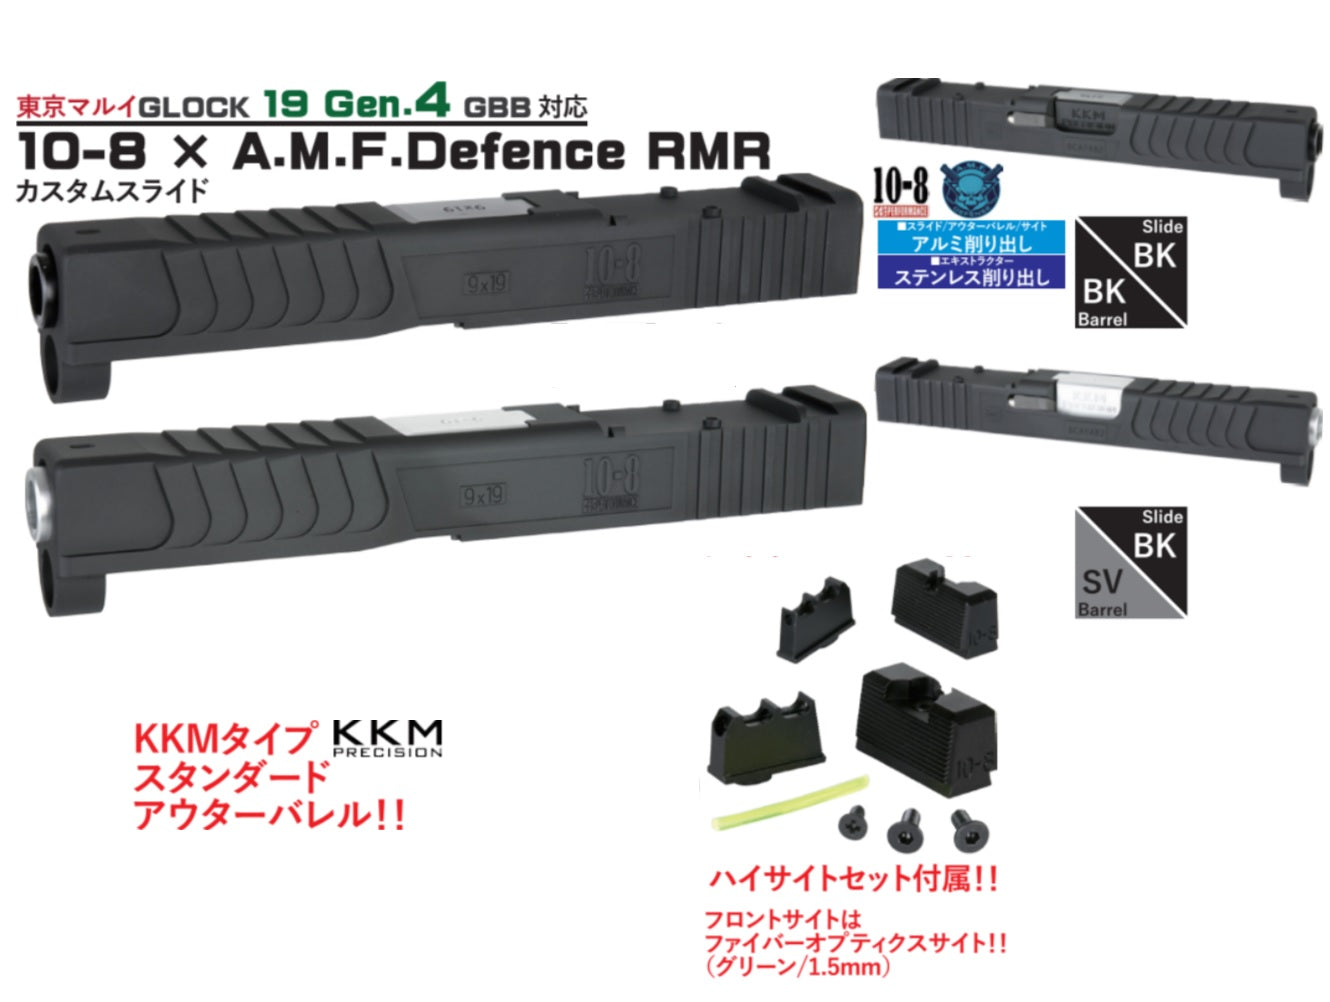 Bomber CNC Aluminum G19 RMR Slide Kit ( 10-8) for Tokyo Marui G19 Gen4 GBB series